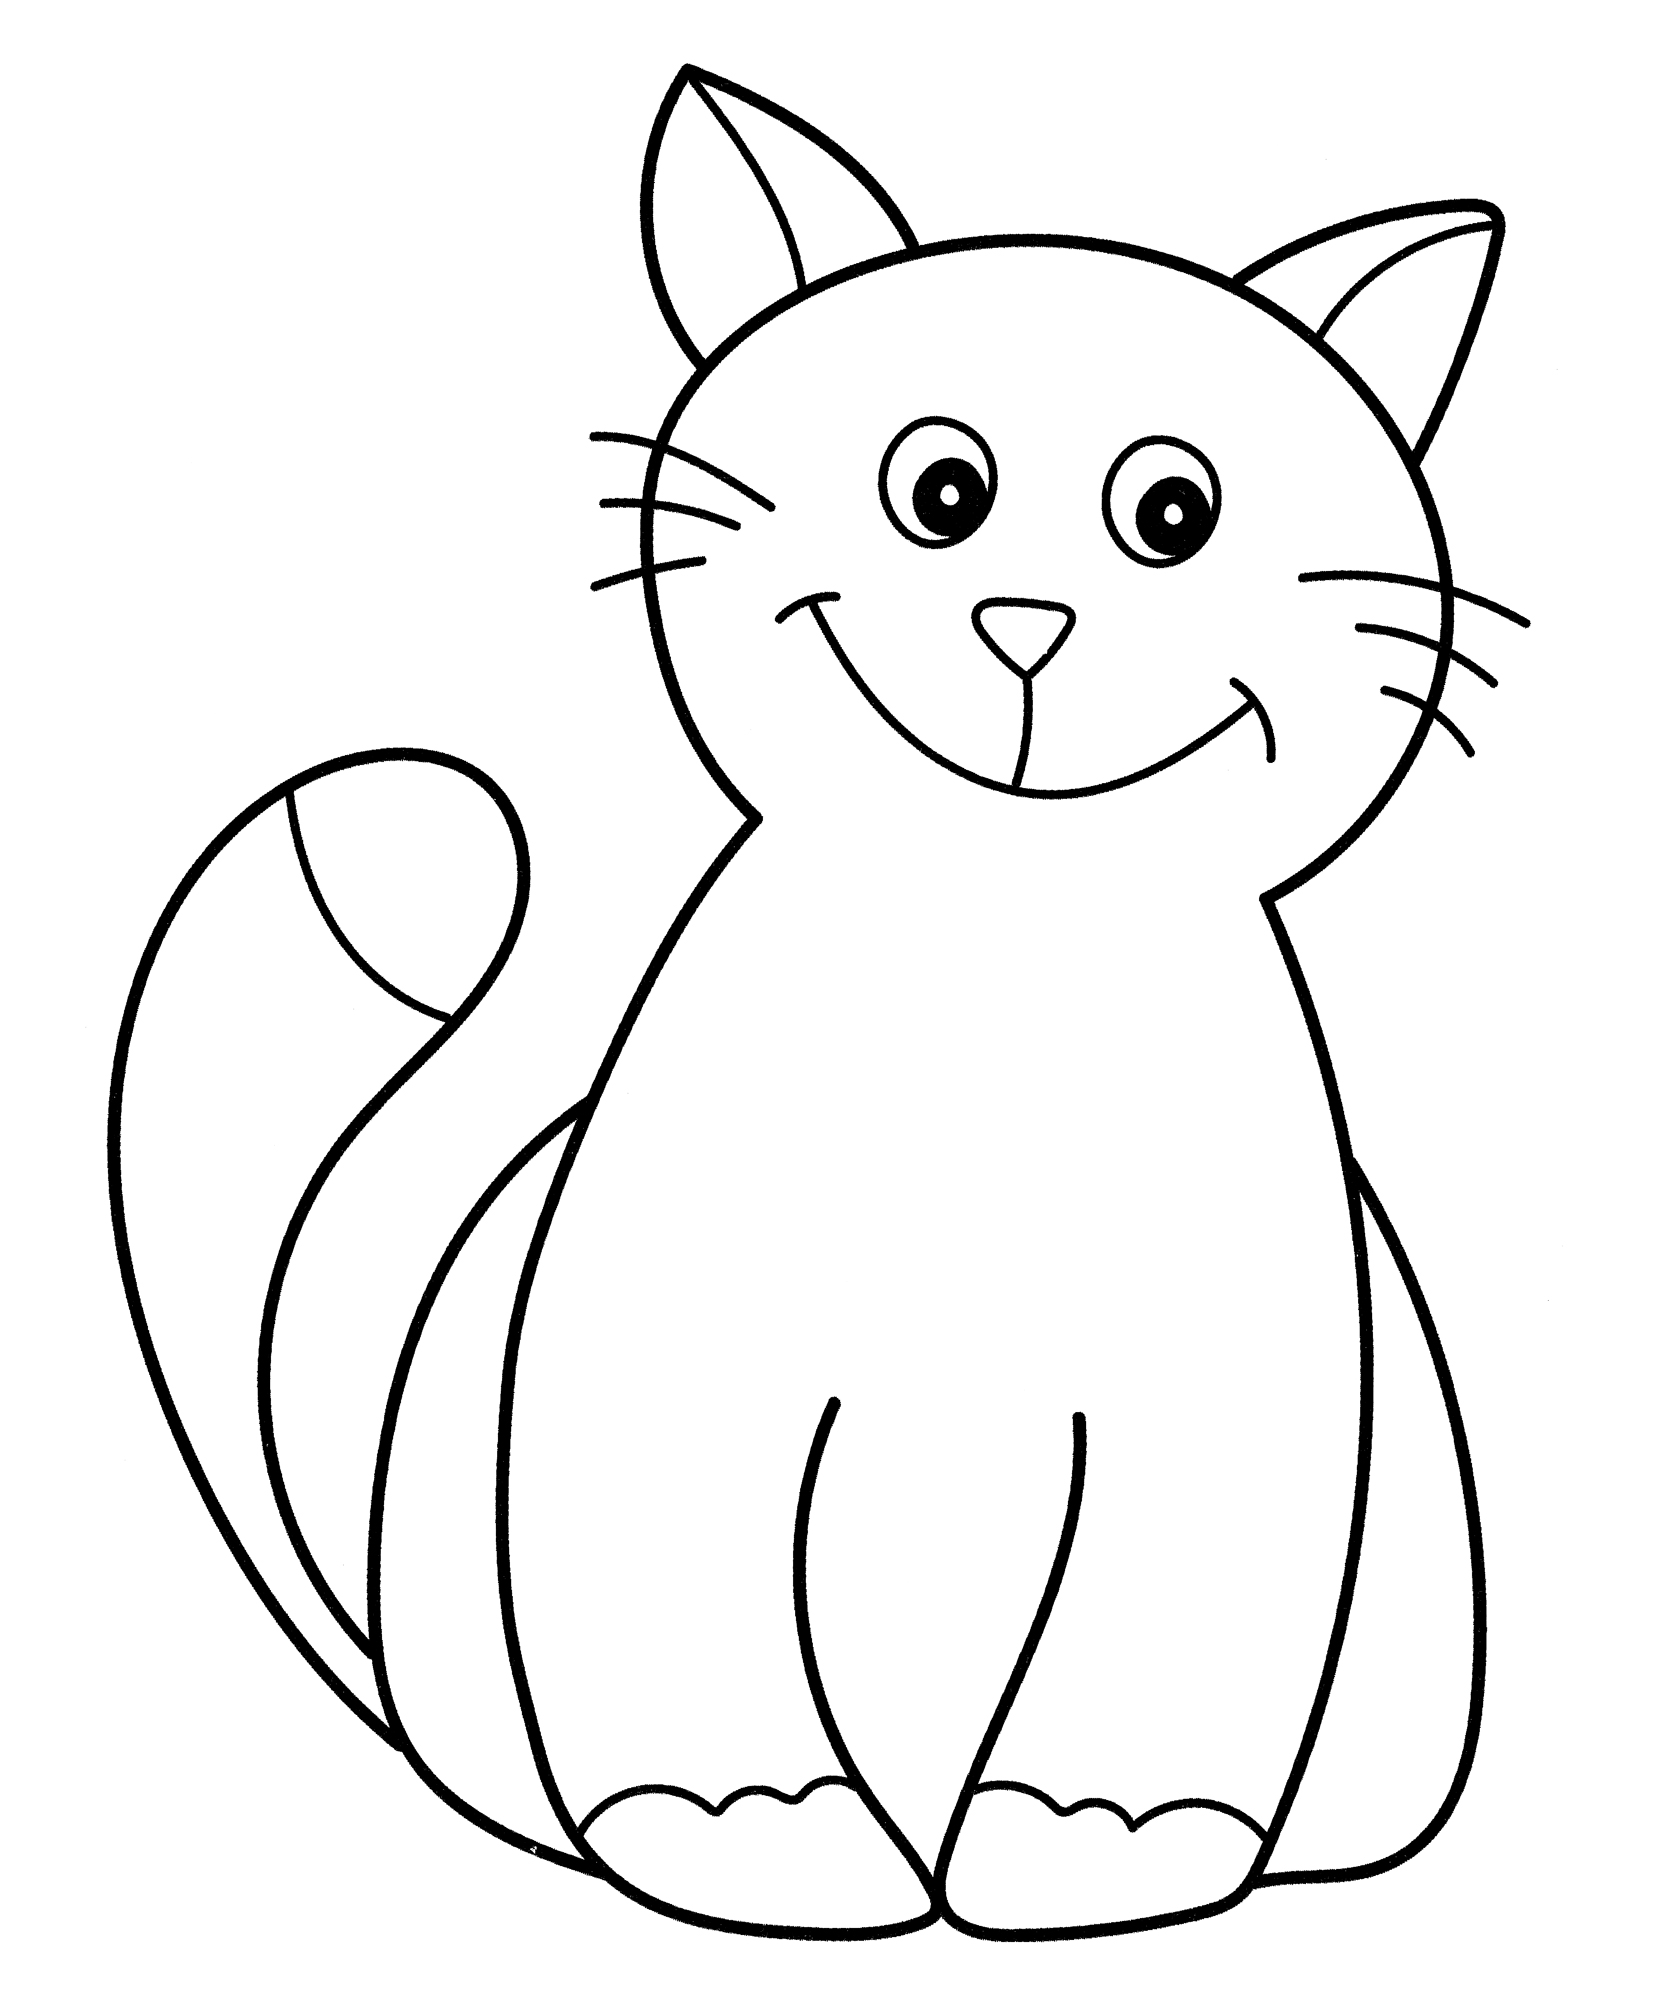 Раскраска Улыбающийся кот - распечатать бесплатно